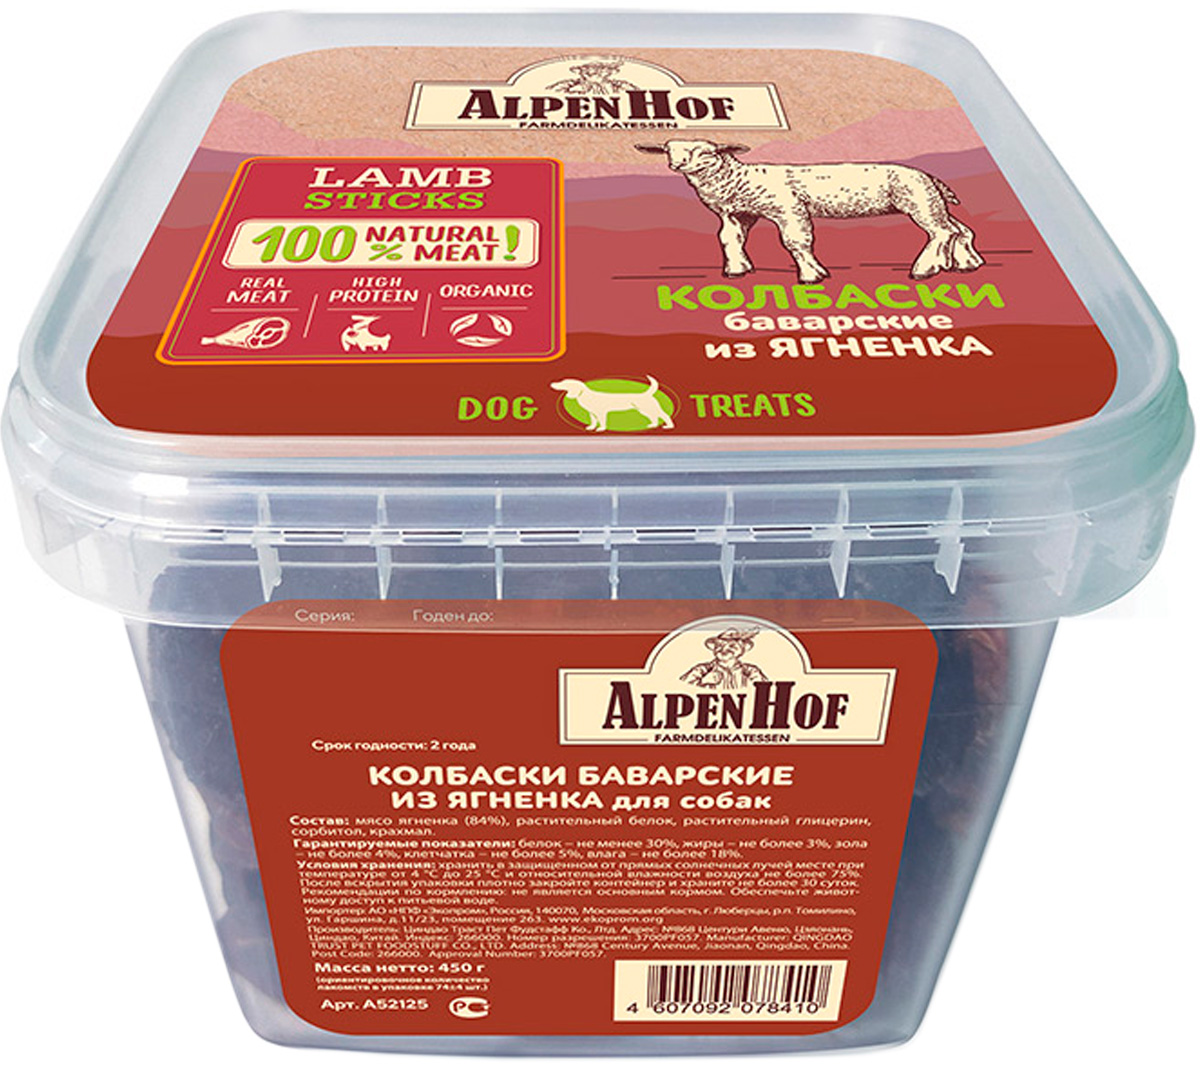 

Лакомство Alpenhof для собак колбаски баварские с ягненком (450 гр)